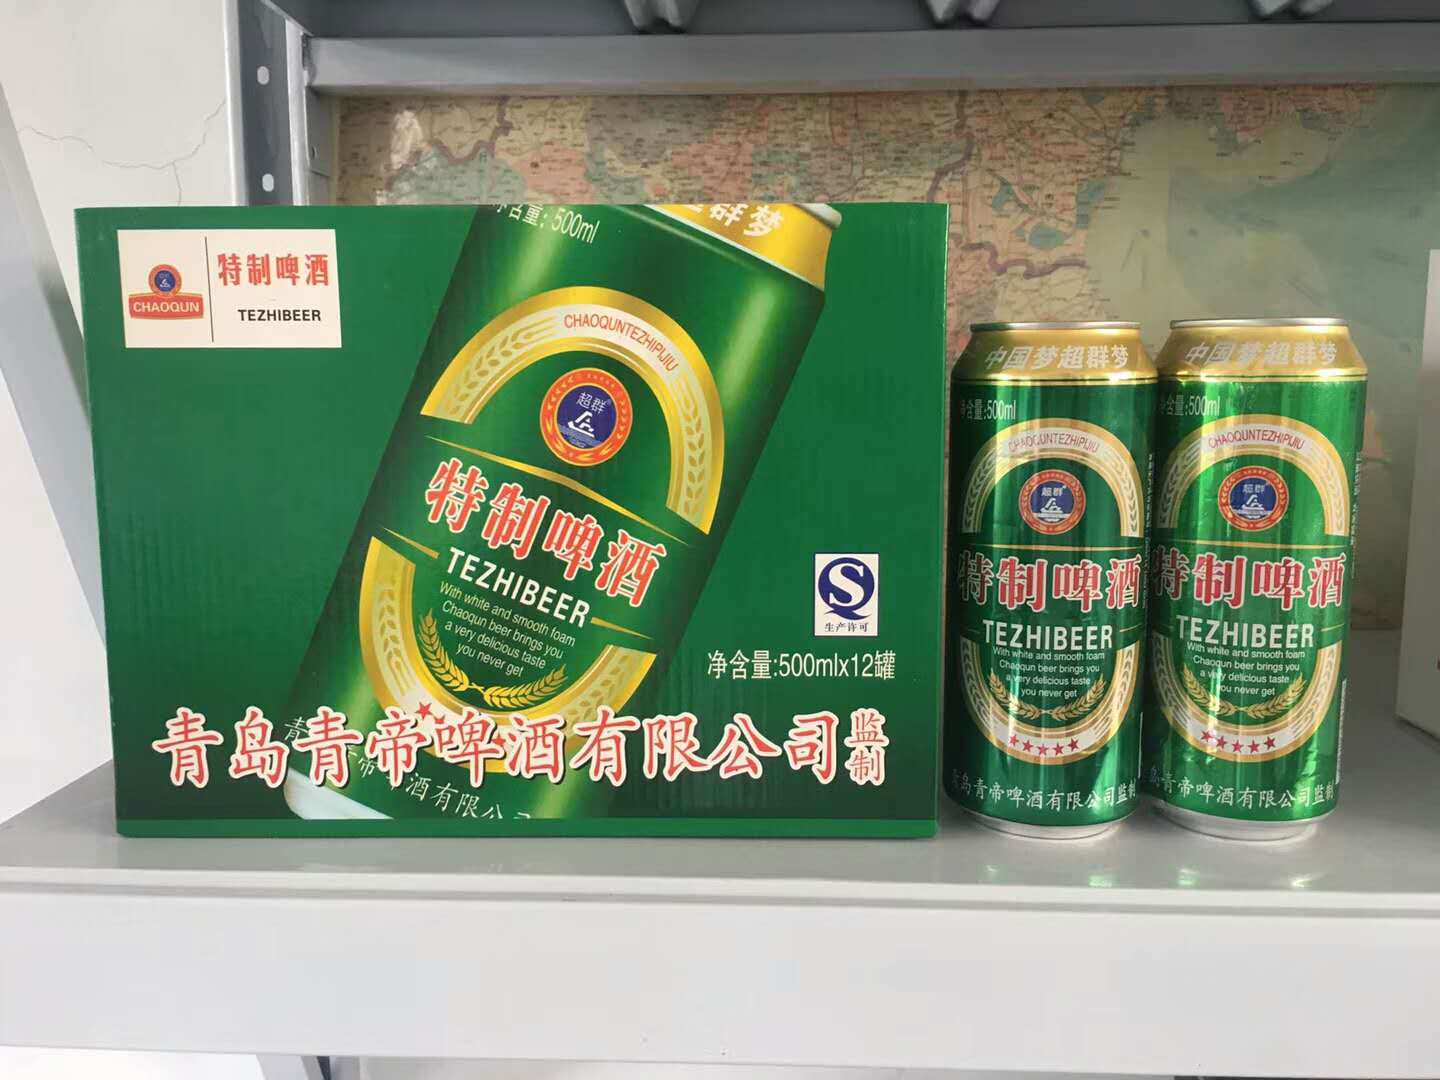 供应草莓果啤玻璃瓶啤酒海西蒙古族藏族自治州